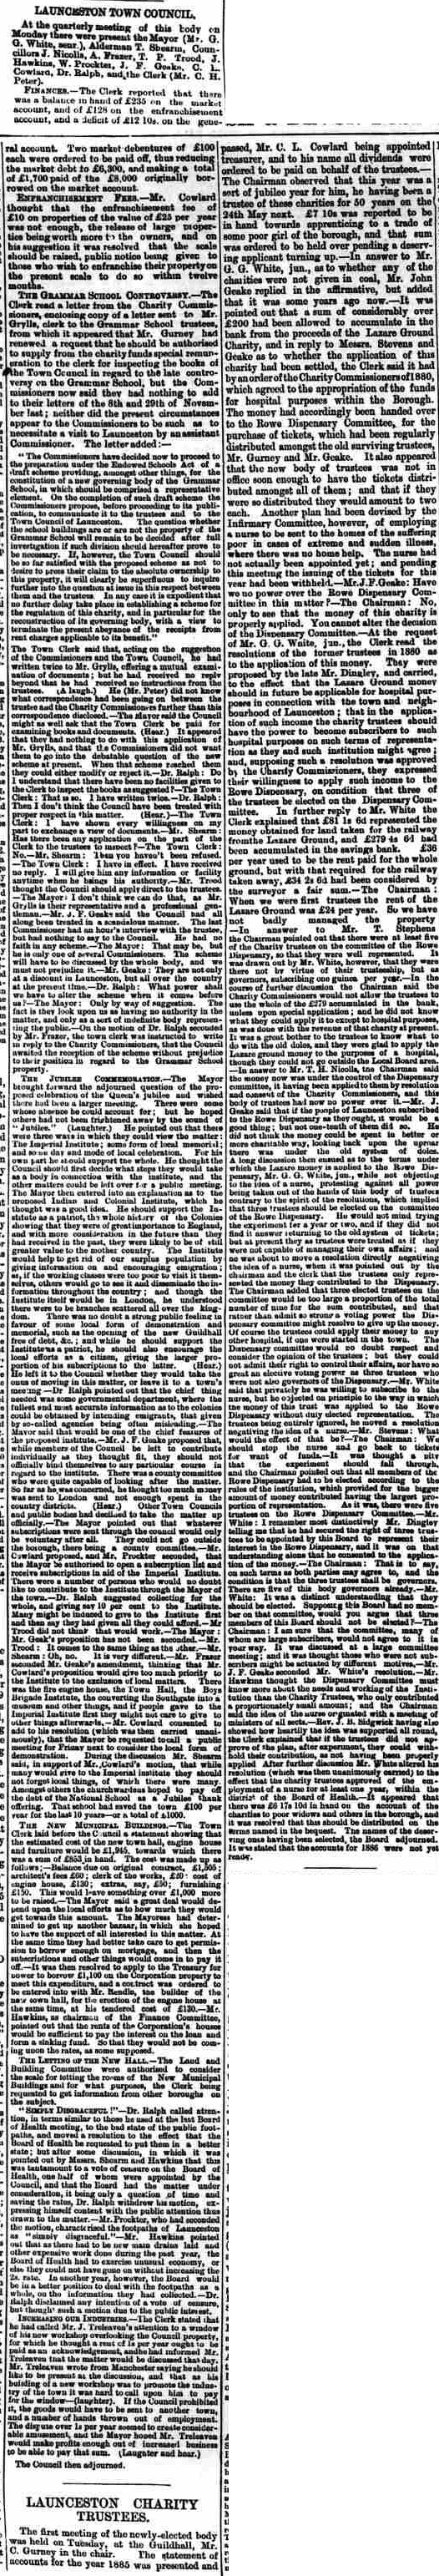 26 February 1887